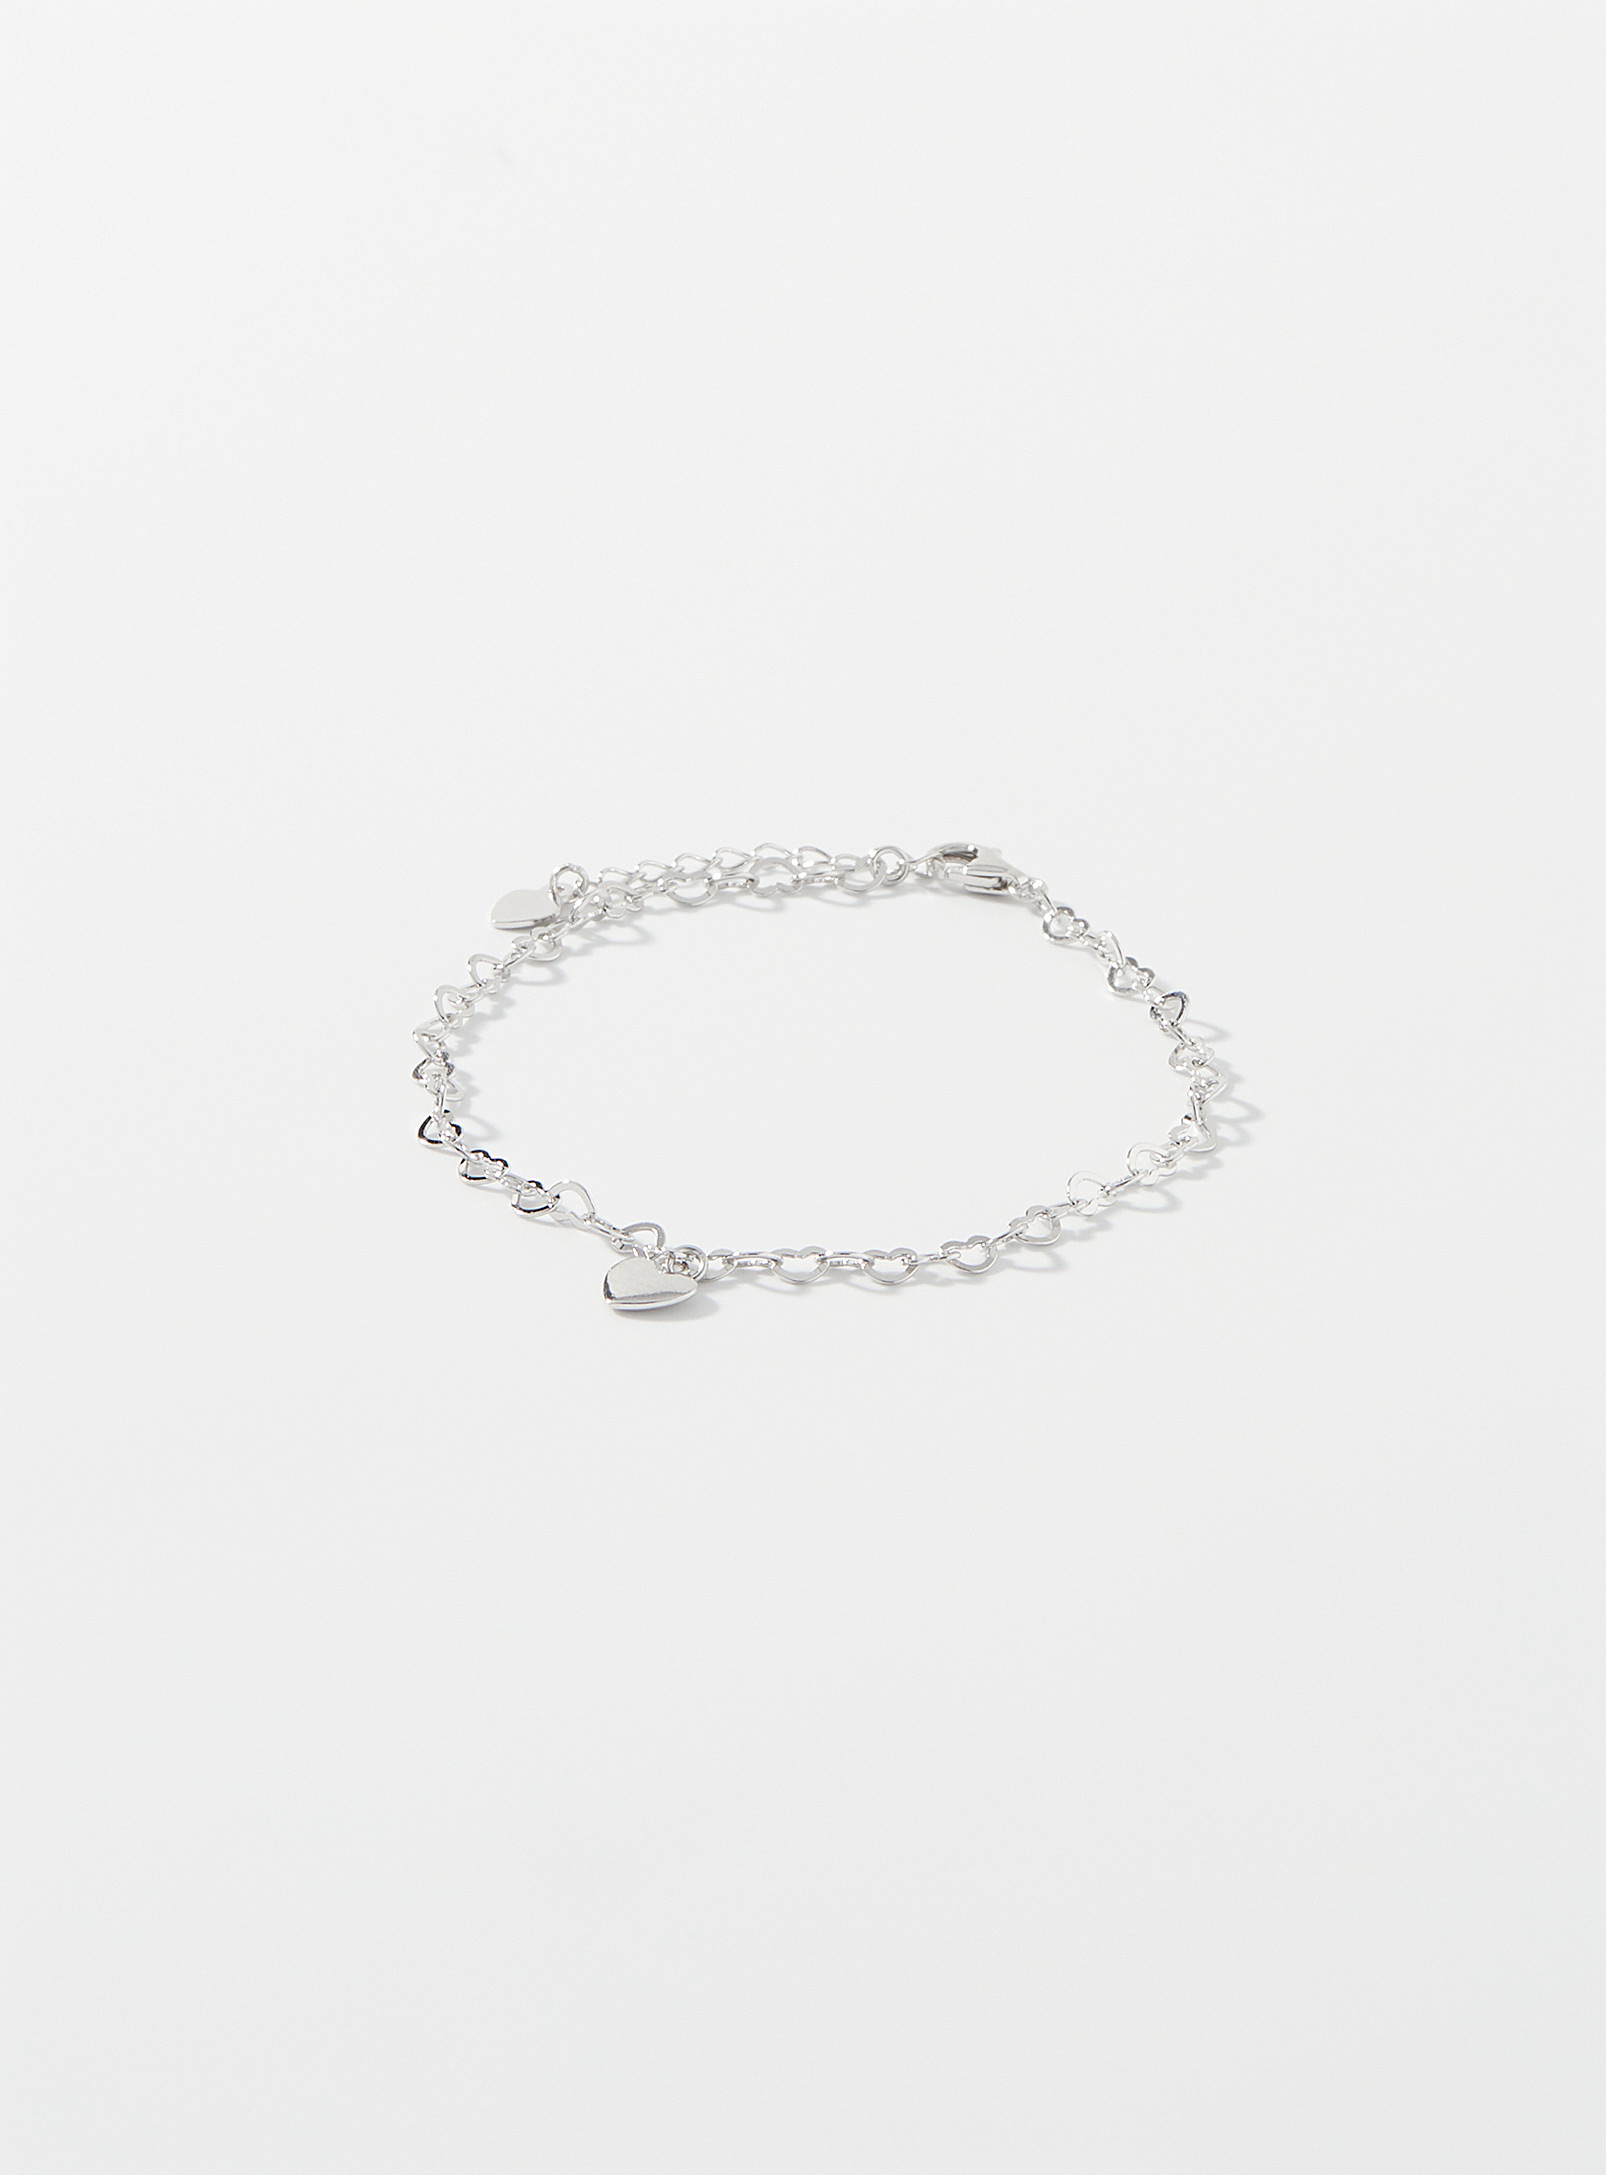 Simons - Women's Heart link bracelet